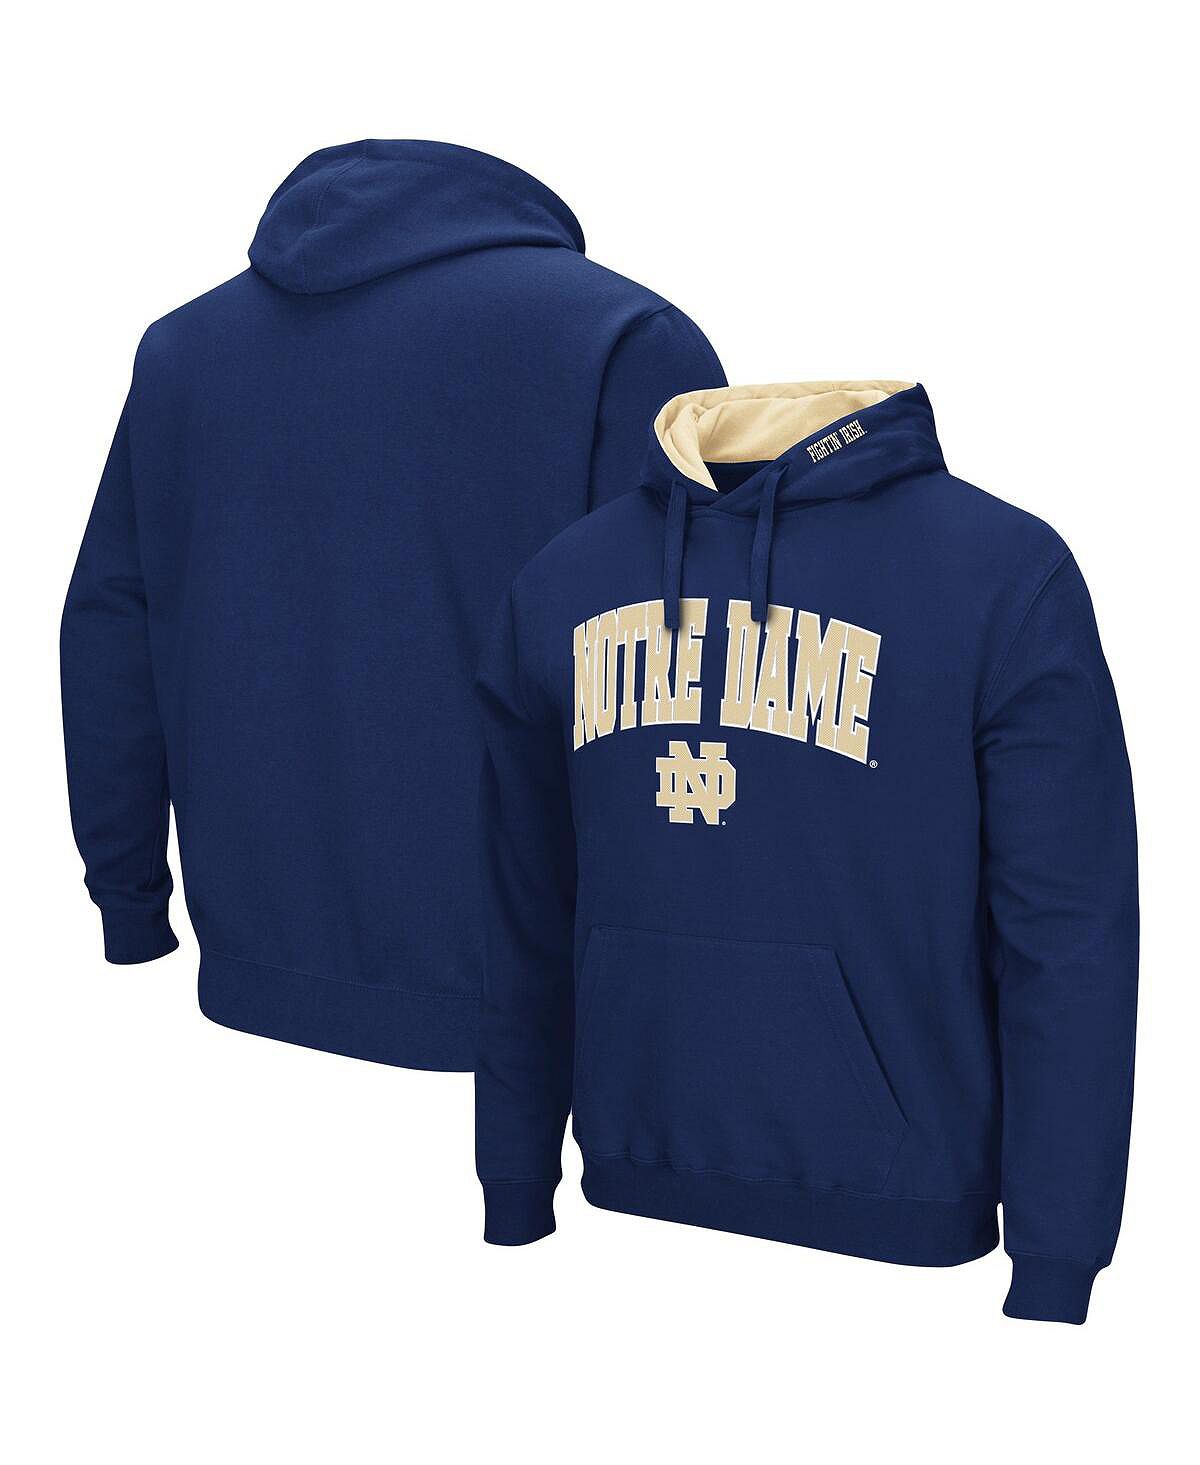 Мужской темно-синий пуловер с капюшоном Notre Dame Fighting Irish Arch и Logo 3.0 Colosseum